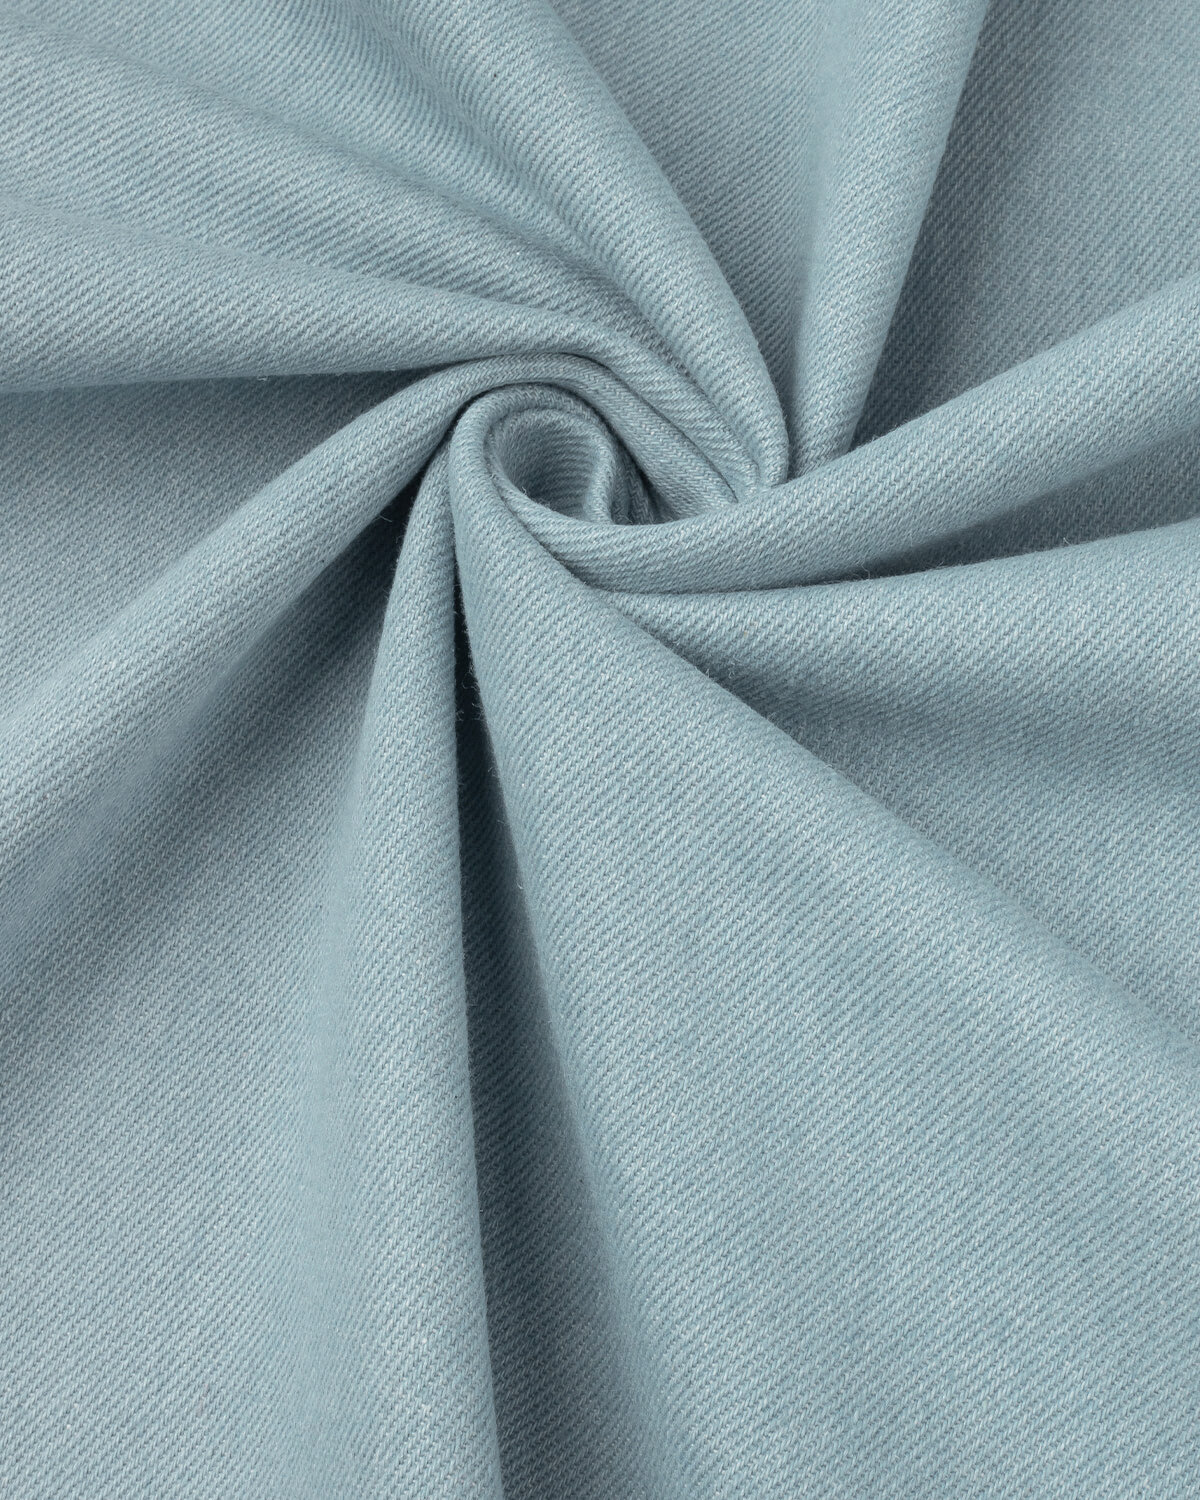 Ткань для шитья и рукоделия Джинс Хлопок не стрейч 1 м * 175 см, голубой 006